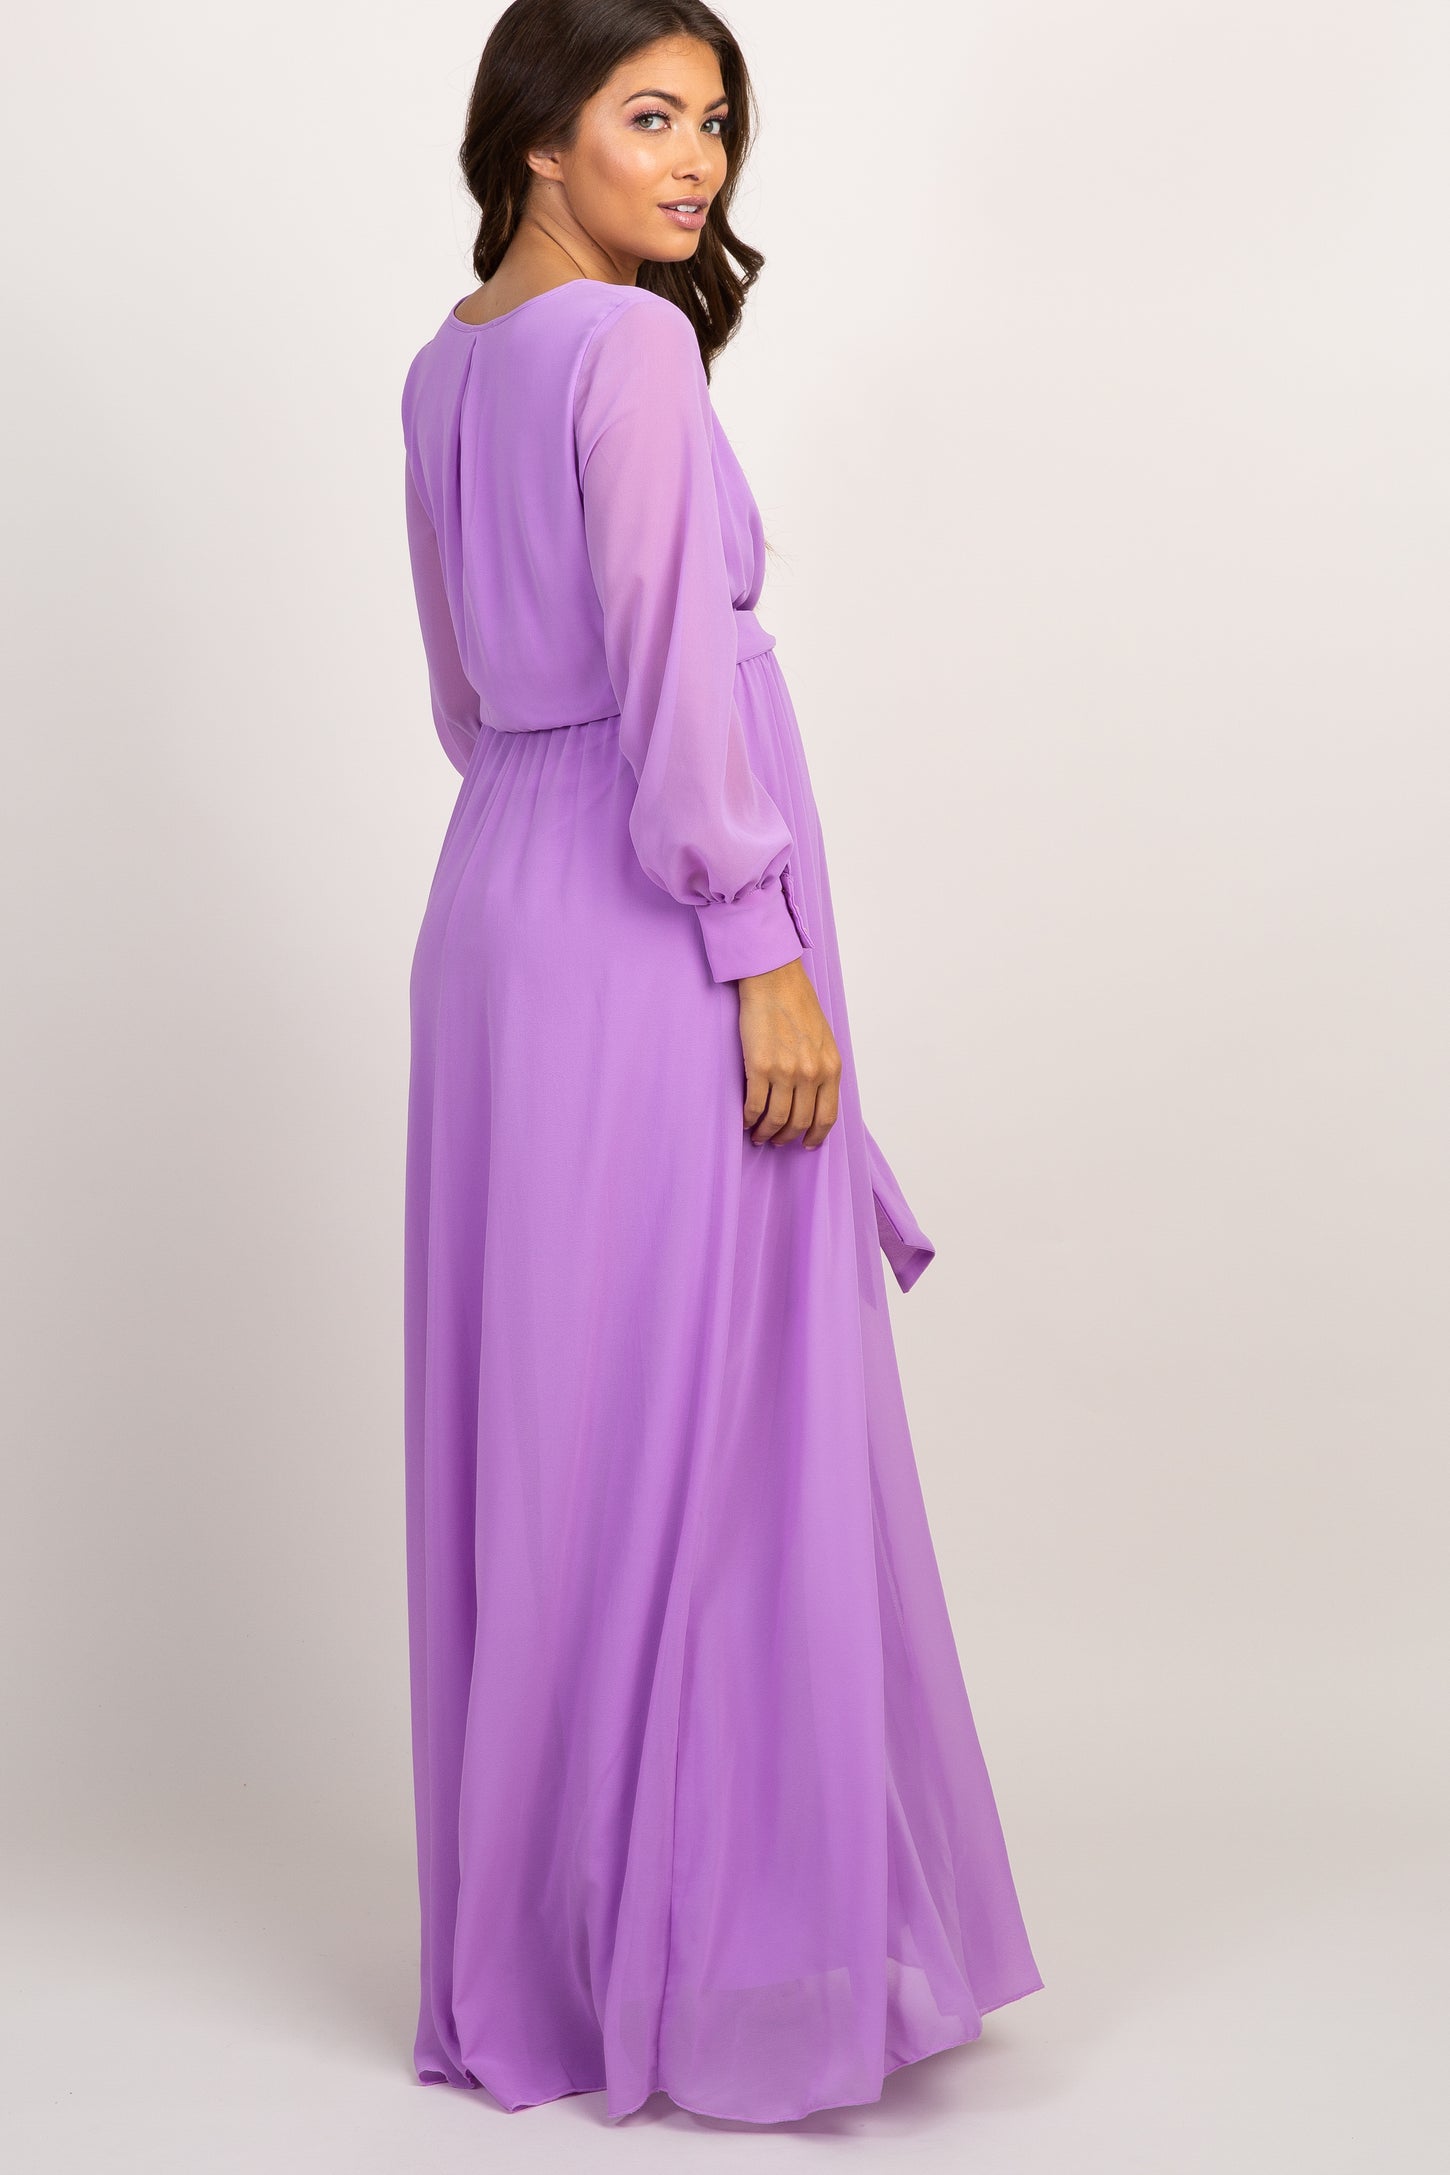 Lavender Chiffon Long Sleeve Pleated Maternity Maxi Dress– PinkBlush